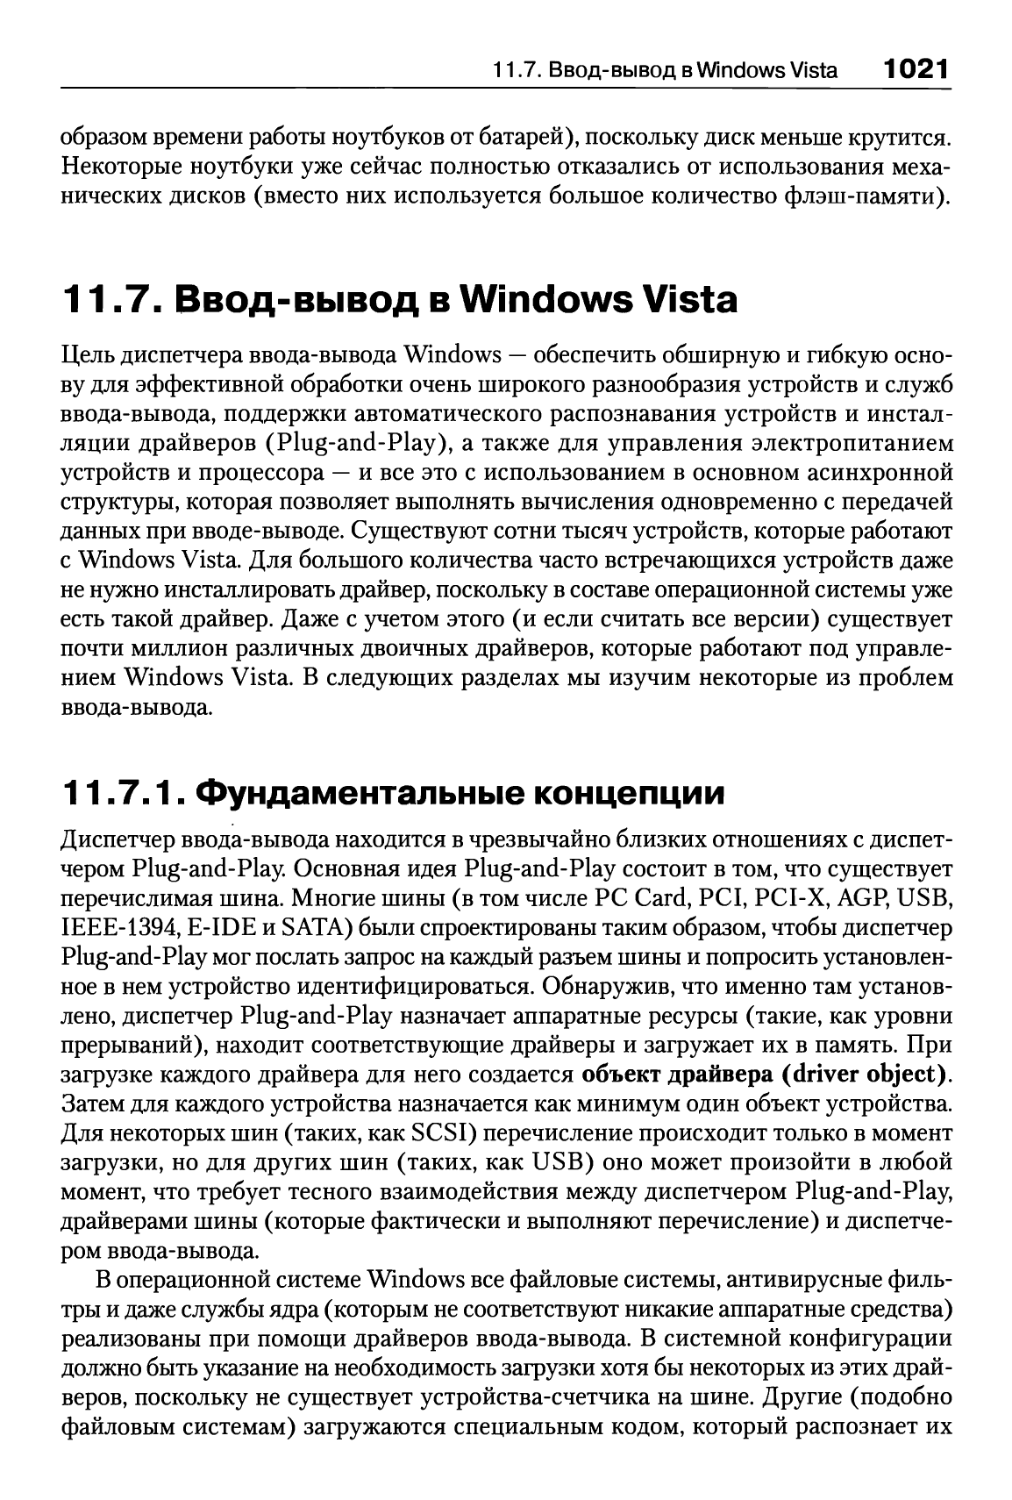 11.7. Ввод-вывод в Windows Vista